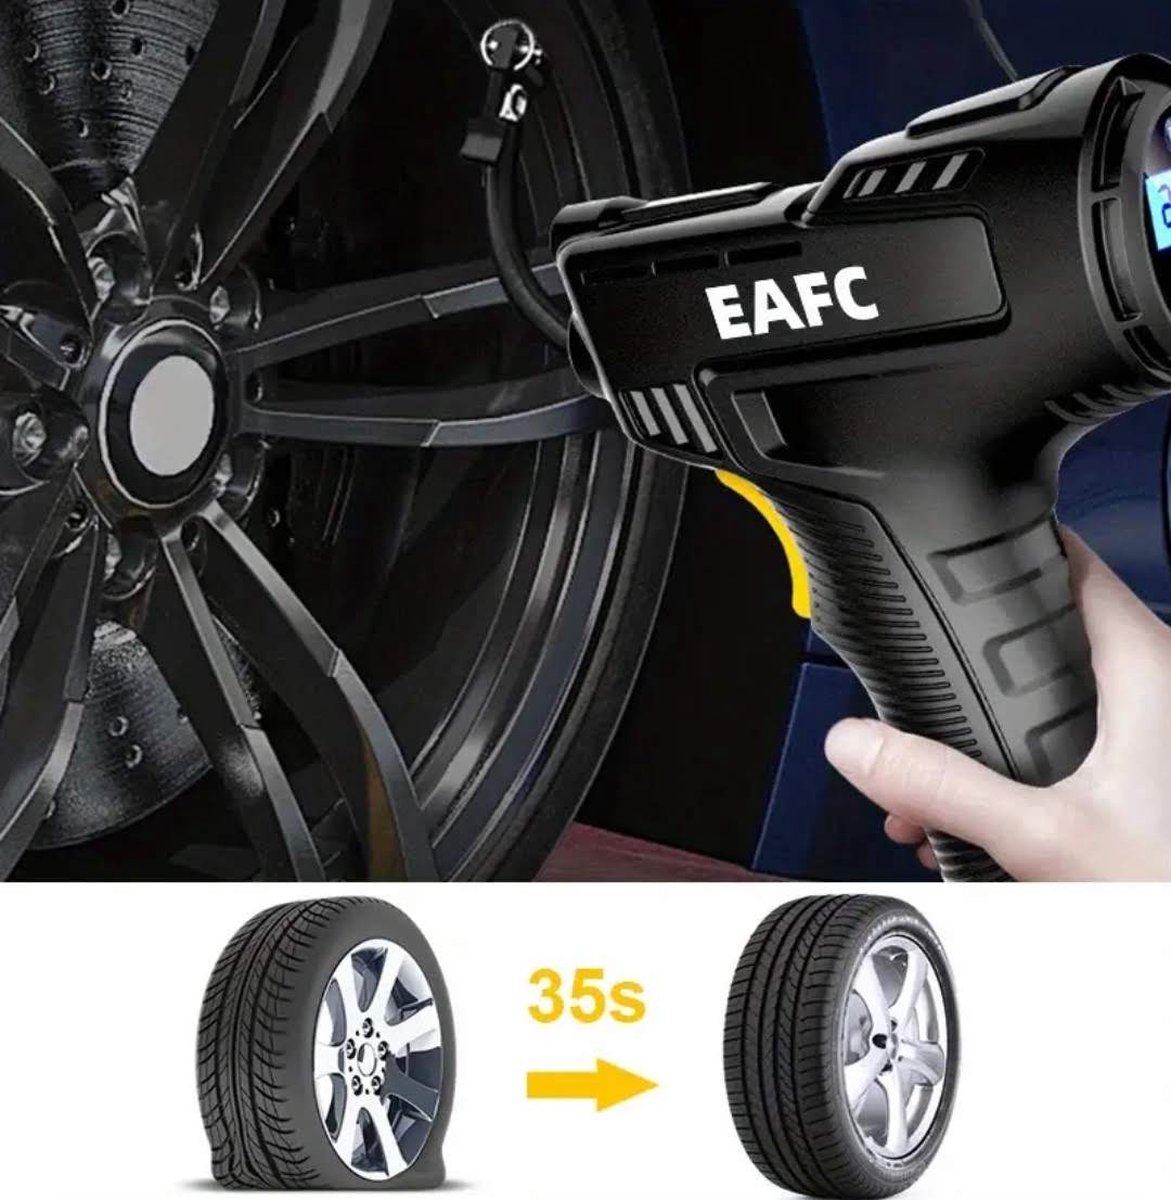 Compresseur portable EAFC - Gonfleur de pneu - Compresseur